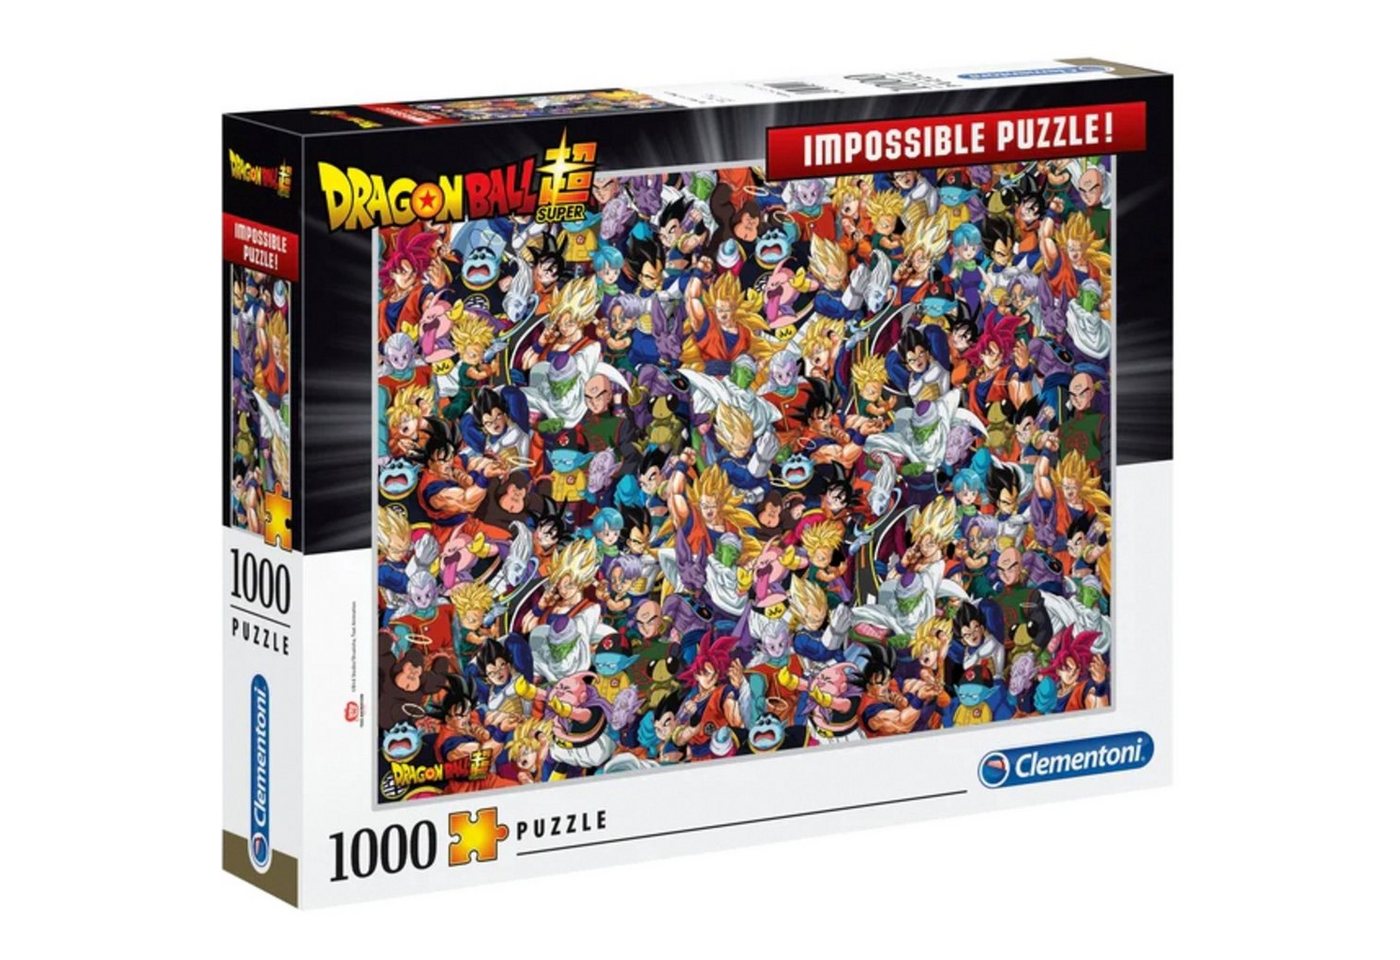 Clementoni® Puzzle Impossible Puzzle! - Dragon Ball, 1000 Puzzleteile von Clementoni®